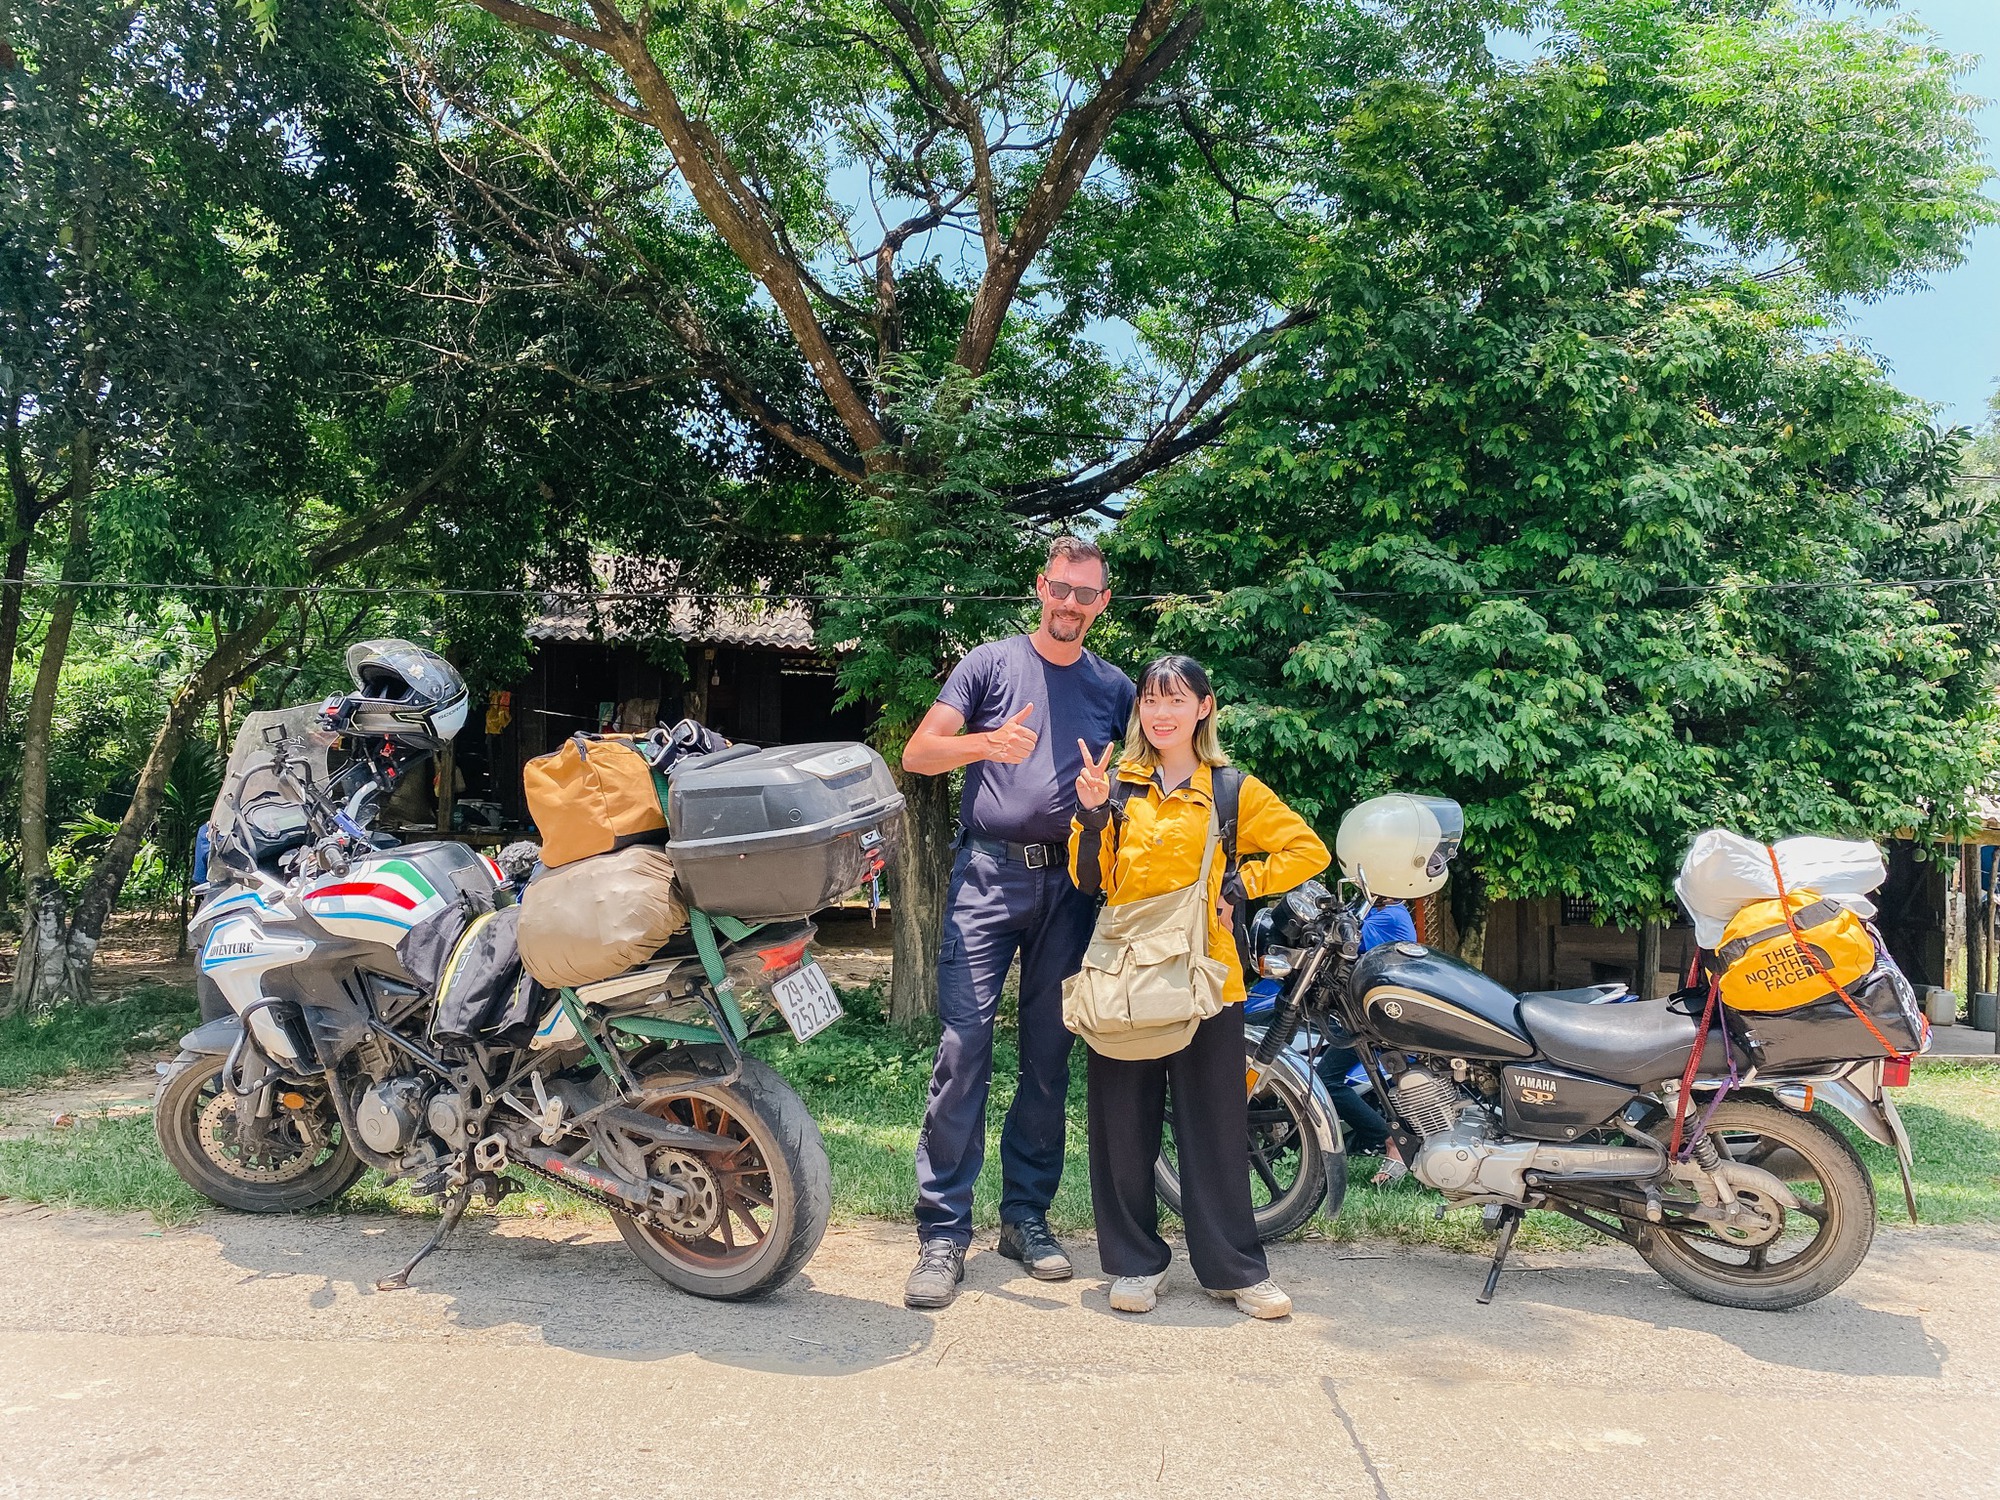 Đón tuổi 25, nàng GenZ quyết định thực hiện chuyến đi để đời: Phượt xe máy xuyên Việt một mình - Ảnh 16.